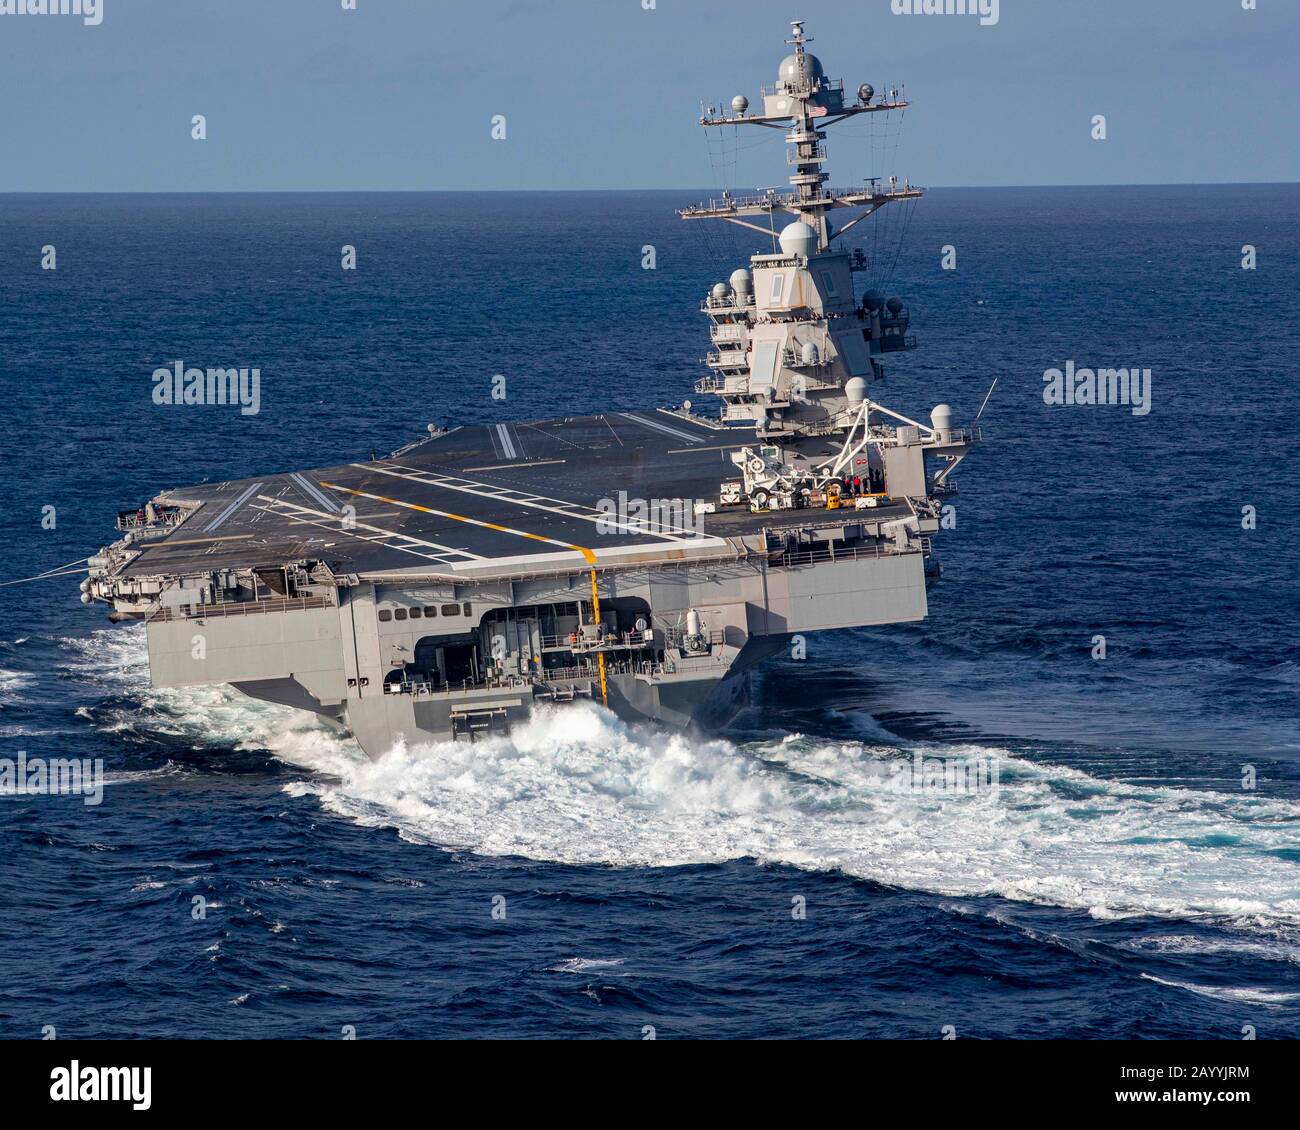 Der nuklearbetriebene Flugzeugträger USS Gerald R. Ford der US-Marine Nimitz führt im Rahmen von Seeversuchen Hochgeschwindigkeitsabbiegungen durch, nachdem der 15-monatige Einbau und der Shakedown am 29. Oktober 2019 im Atlantik erfolgt sind. Stockfoto